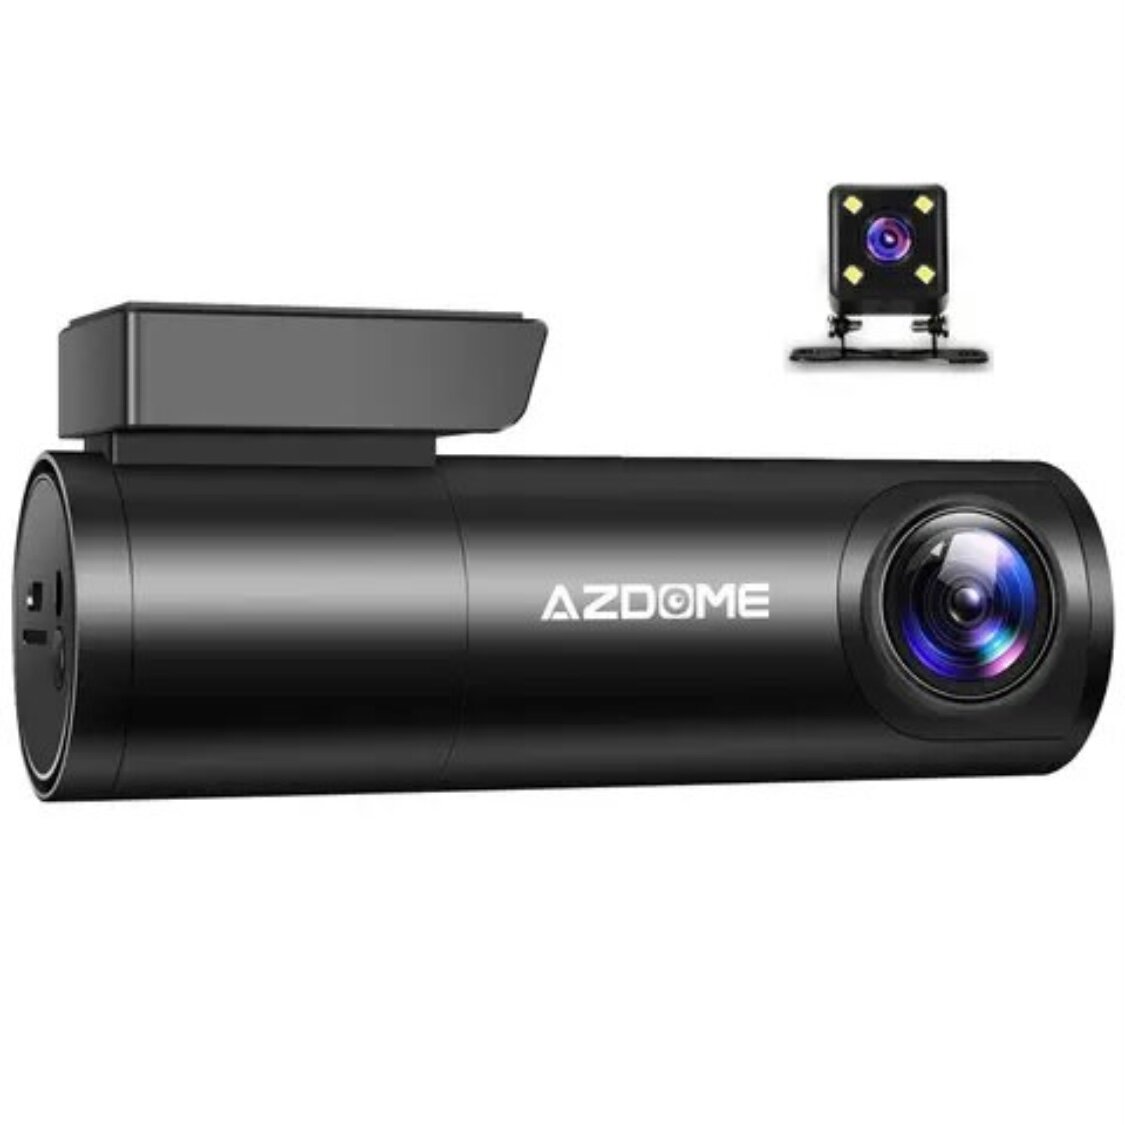 Автомобильный видеорегистратор Azdome M300 1296p DashCam WiFi в Комплекте Автомобильный HardWire Kit Кабель AZDOME JYX04